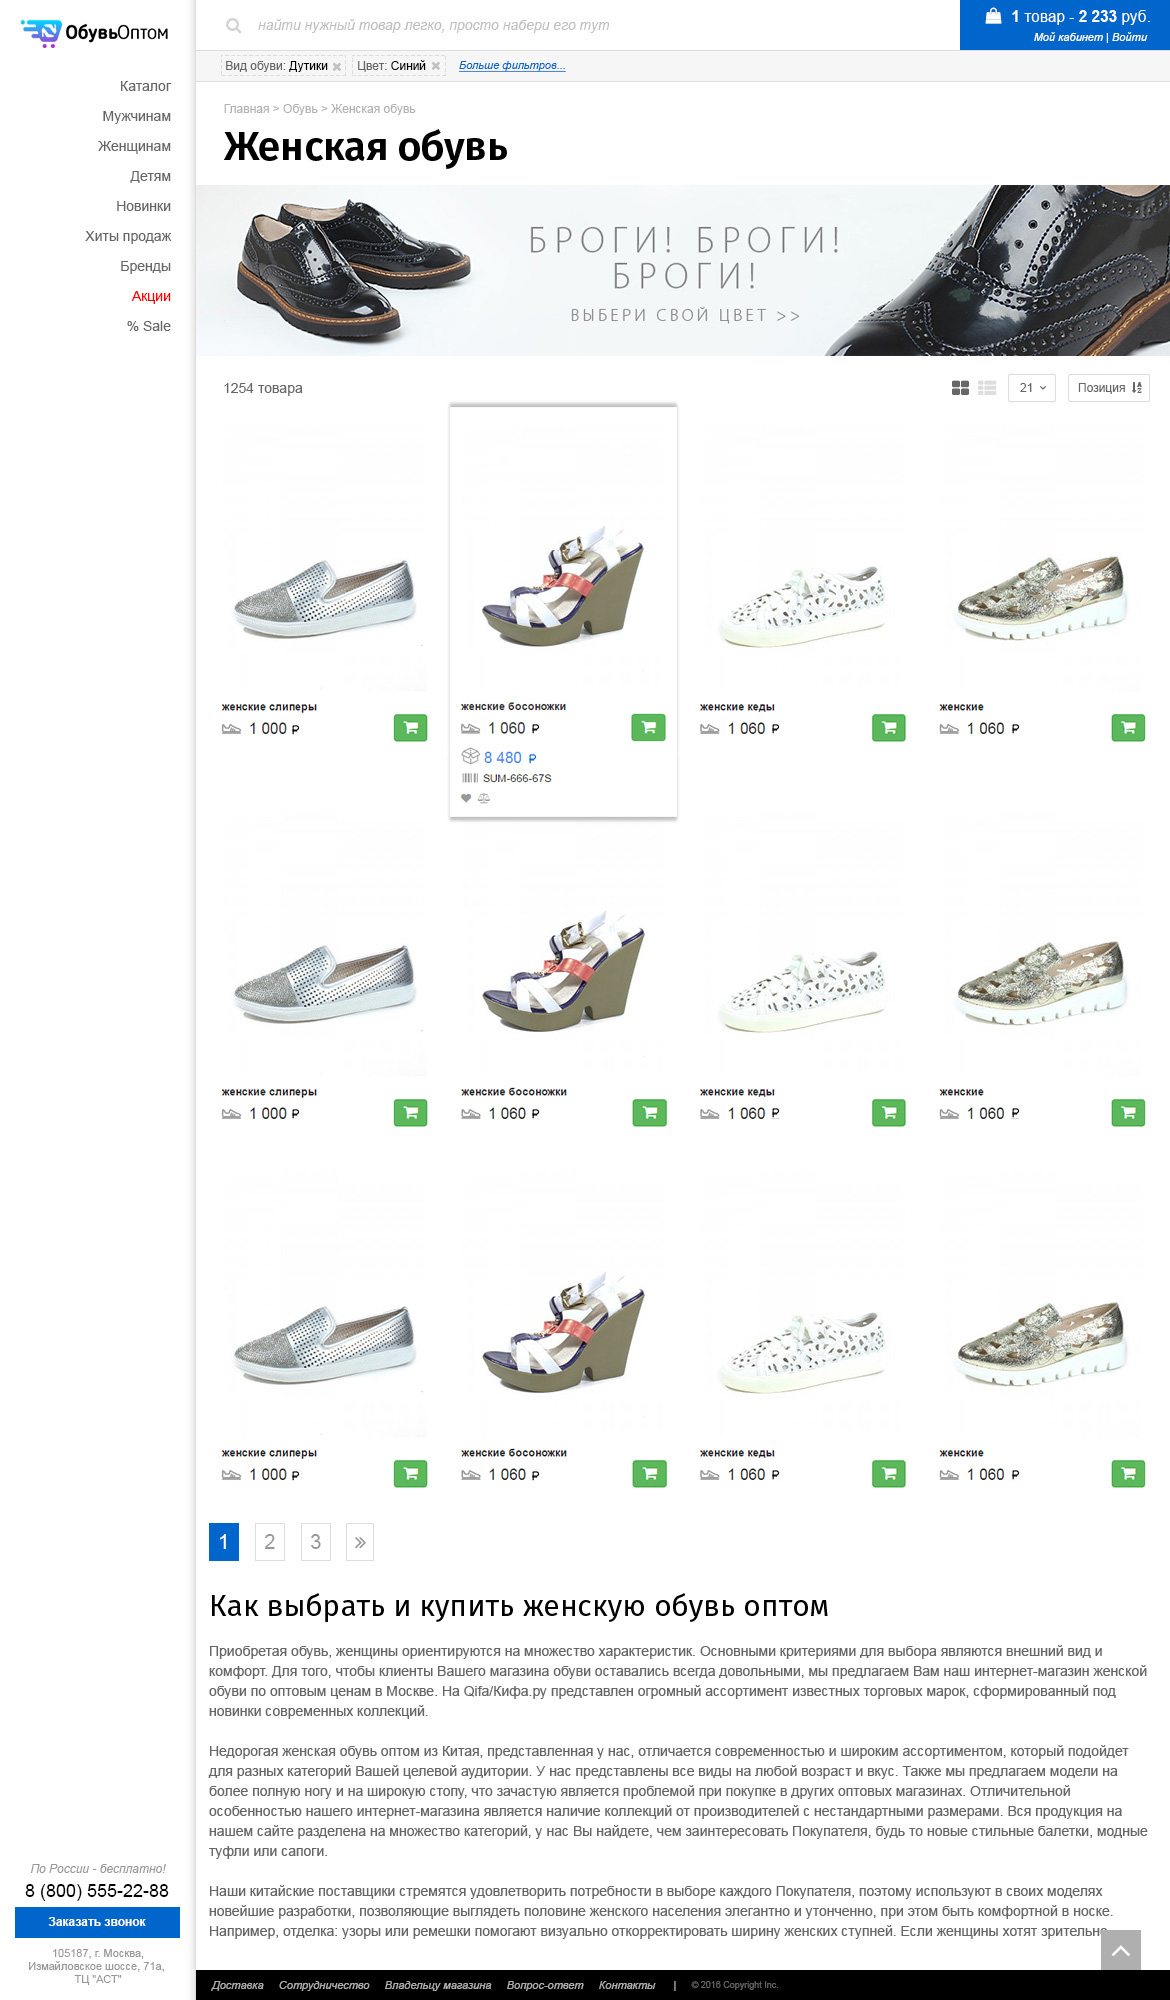 Сайт оптовой продажи обуви